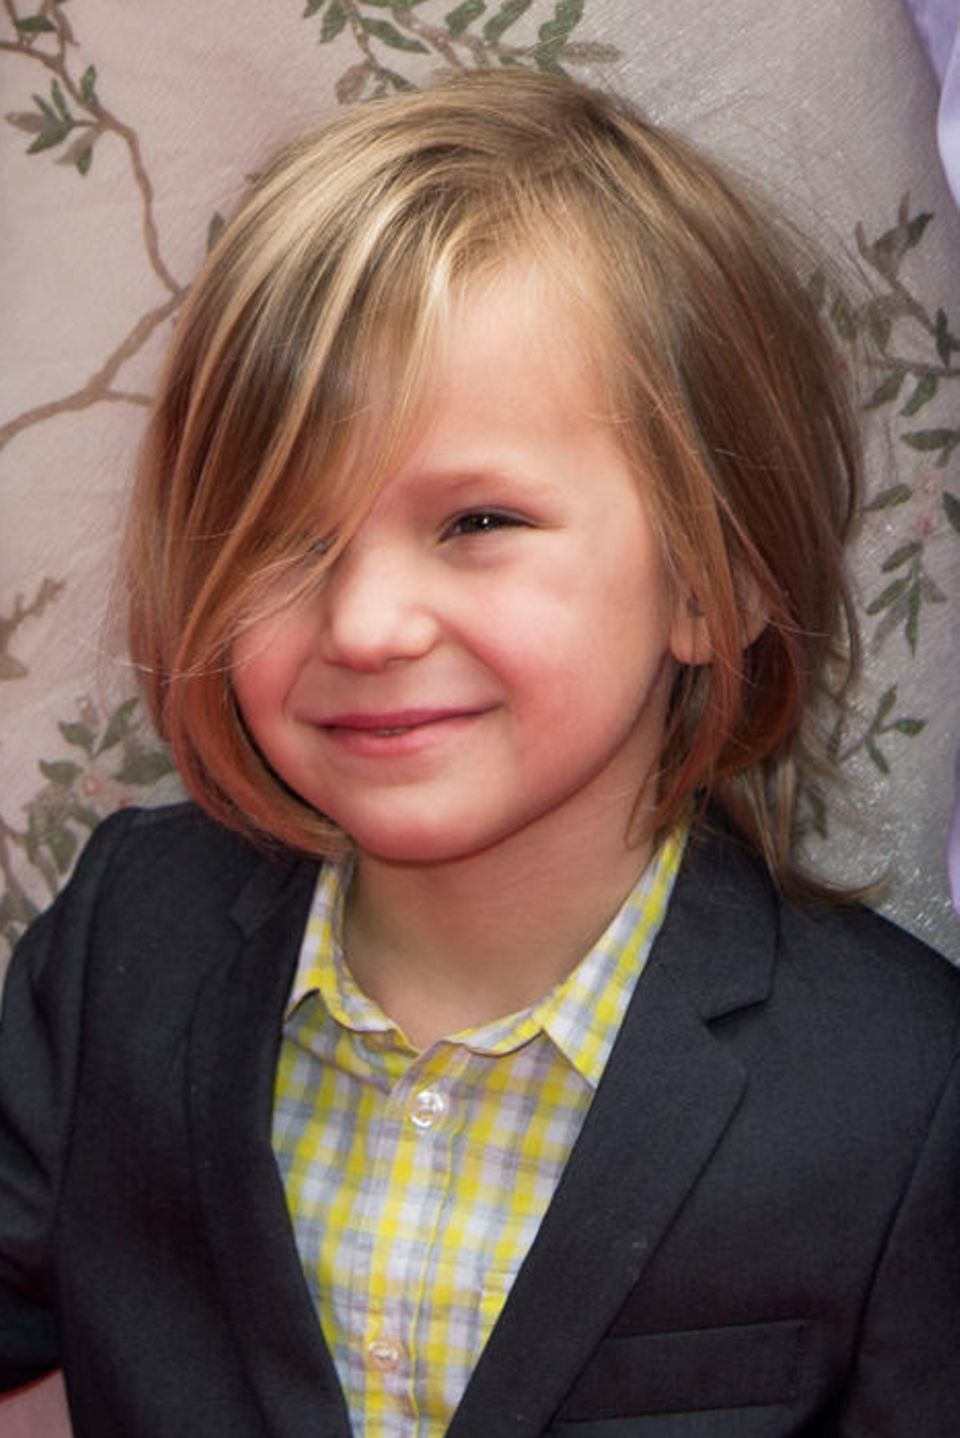 Der kleine Bingham, Kate Hudsons jüngster Sohn, sieht mit seinem mittellangen Haarschnitt zuckersüß aus.